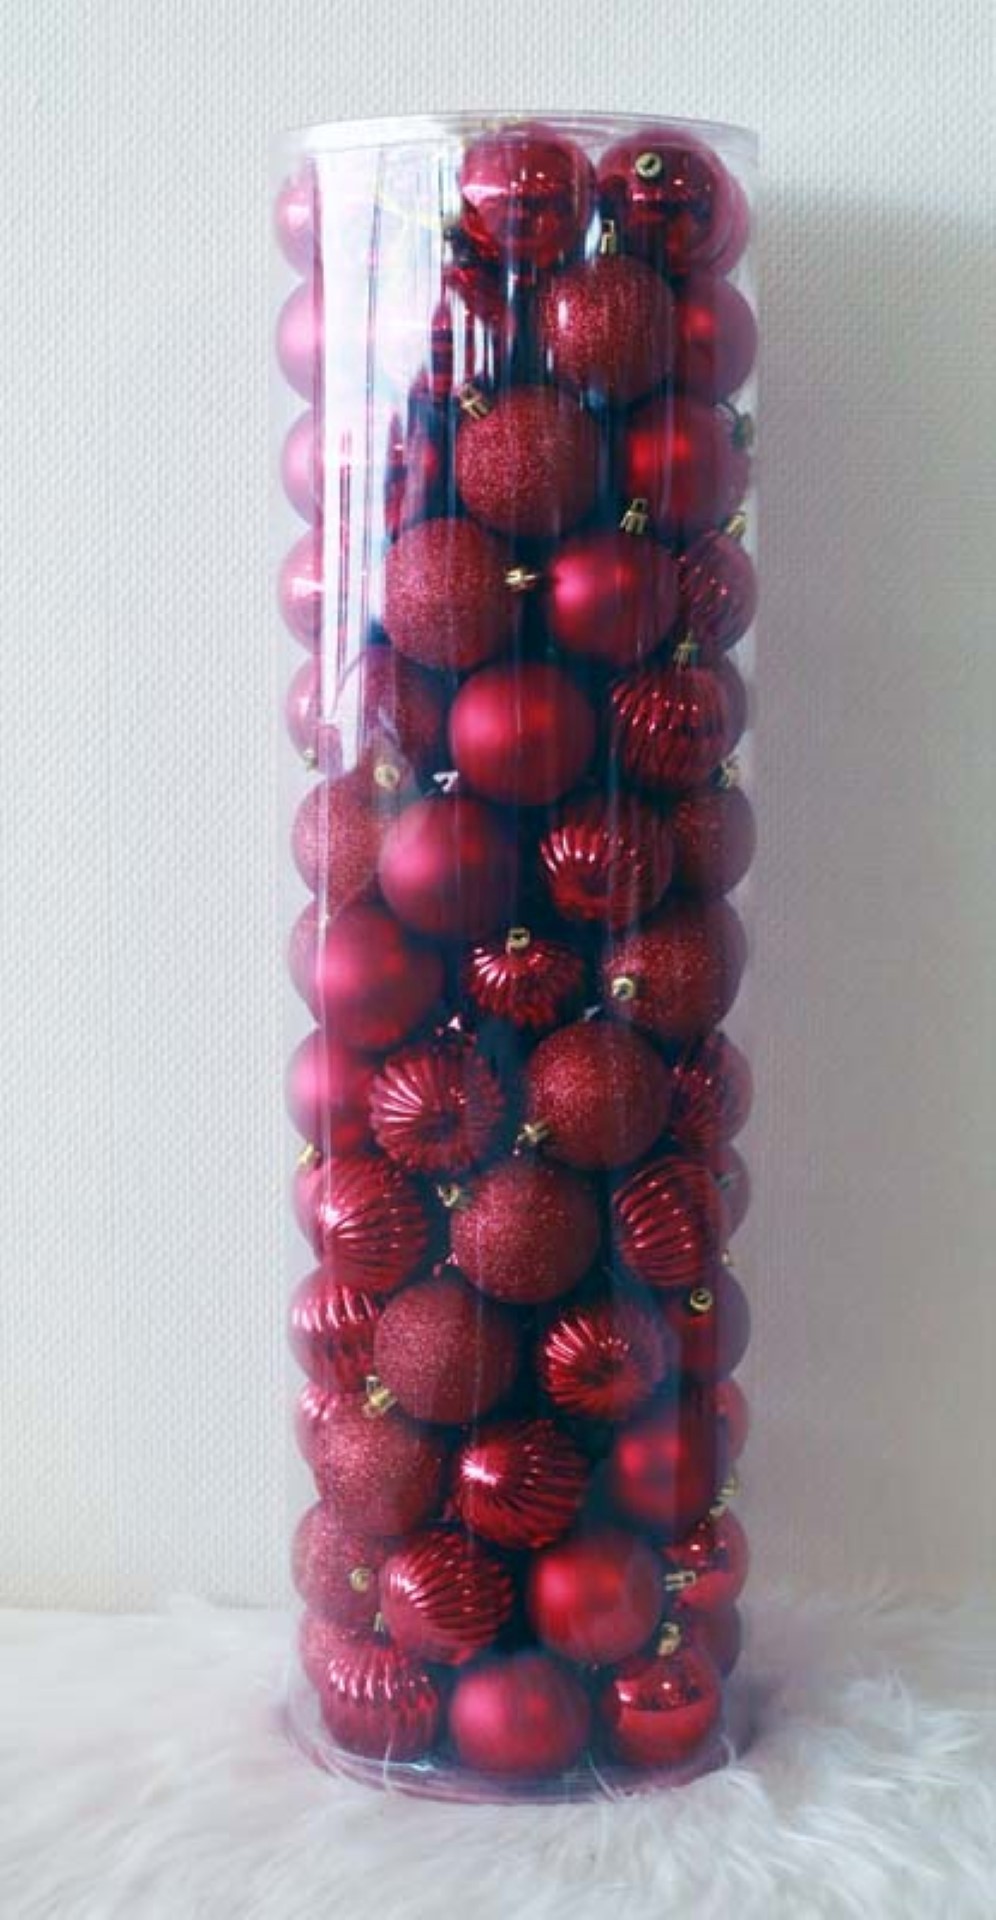 100 Onbreekbare kerstballen in koker doorsnee 6 cm rood watermeloen - Oosterik Home